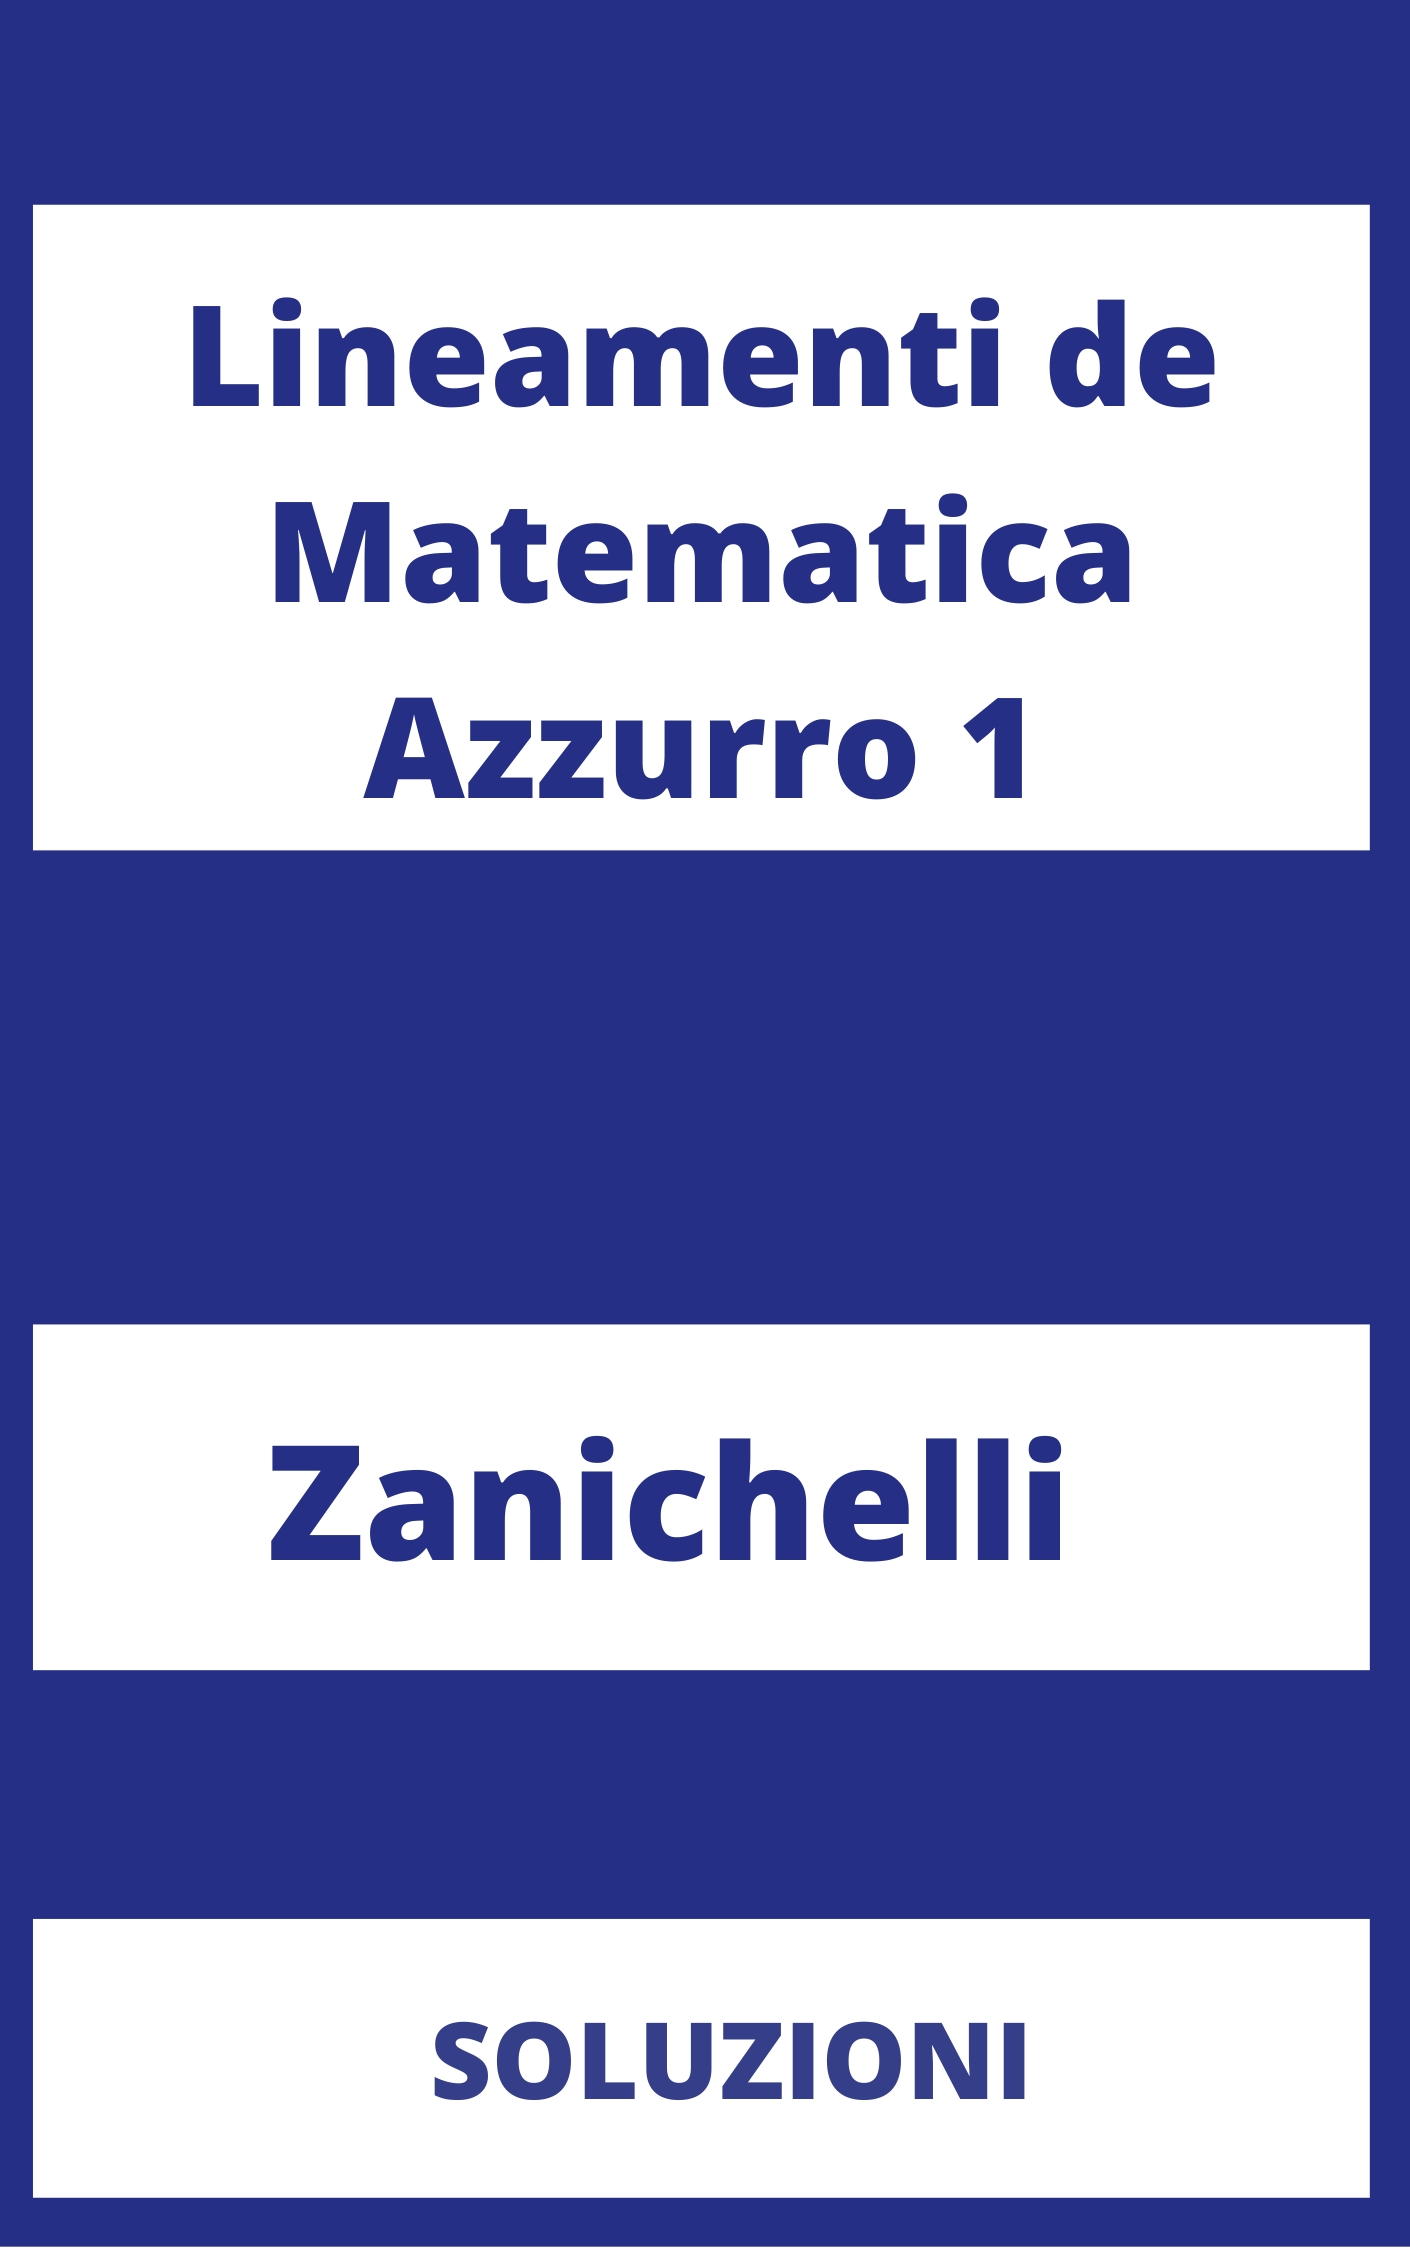 Lineamenti de Matematica Azzurro 1